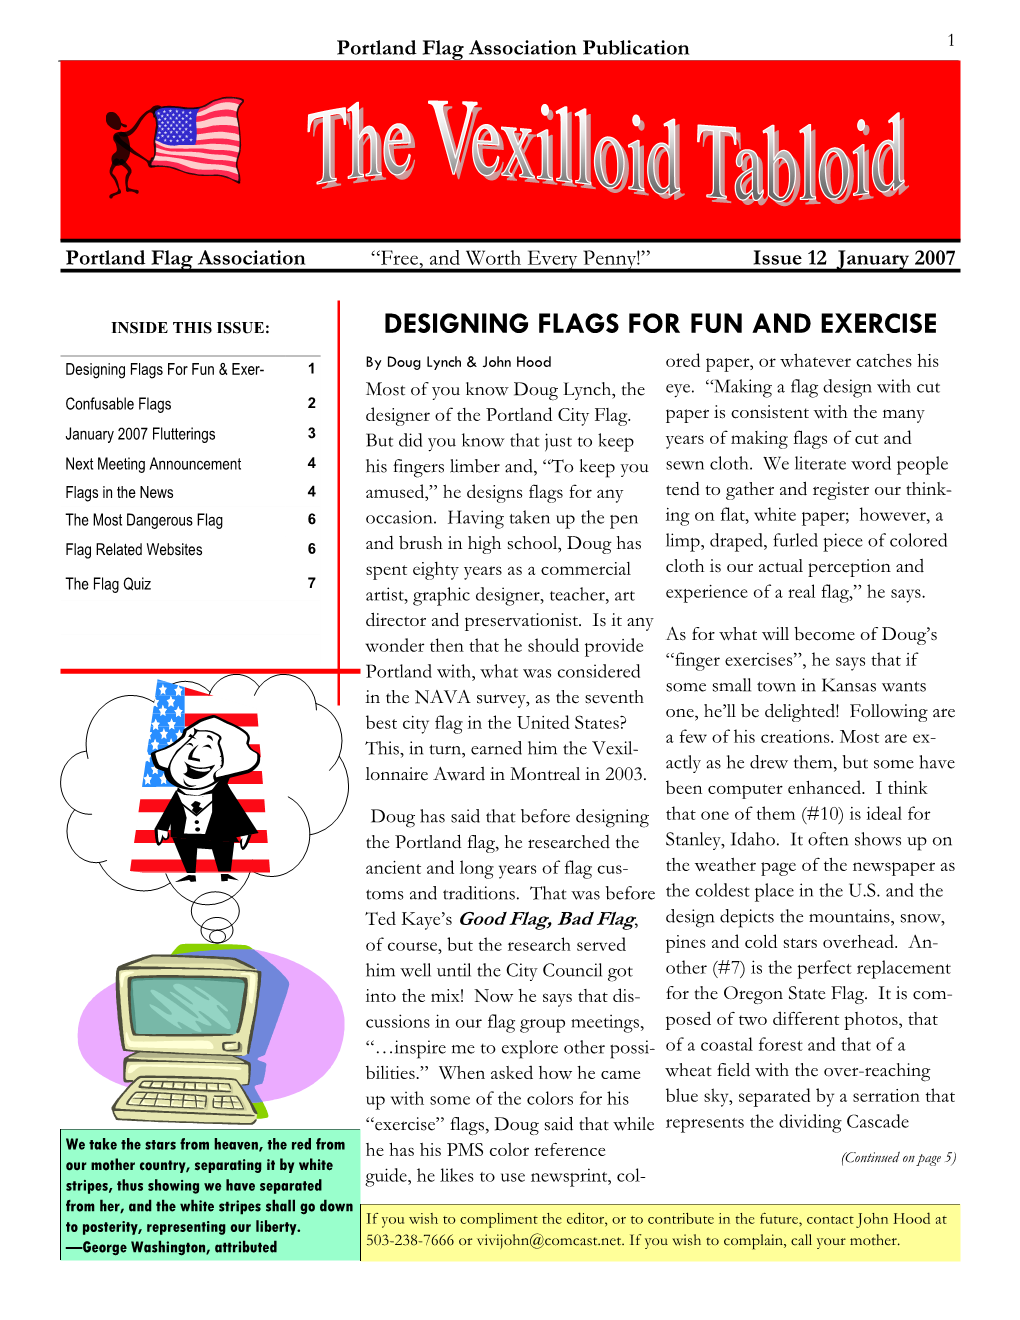 The Vexilloid Tabloid #12, January 2007